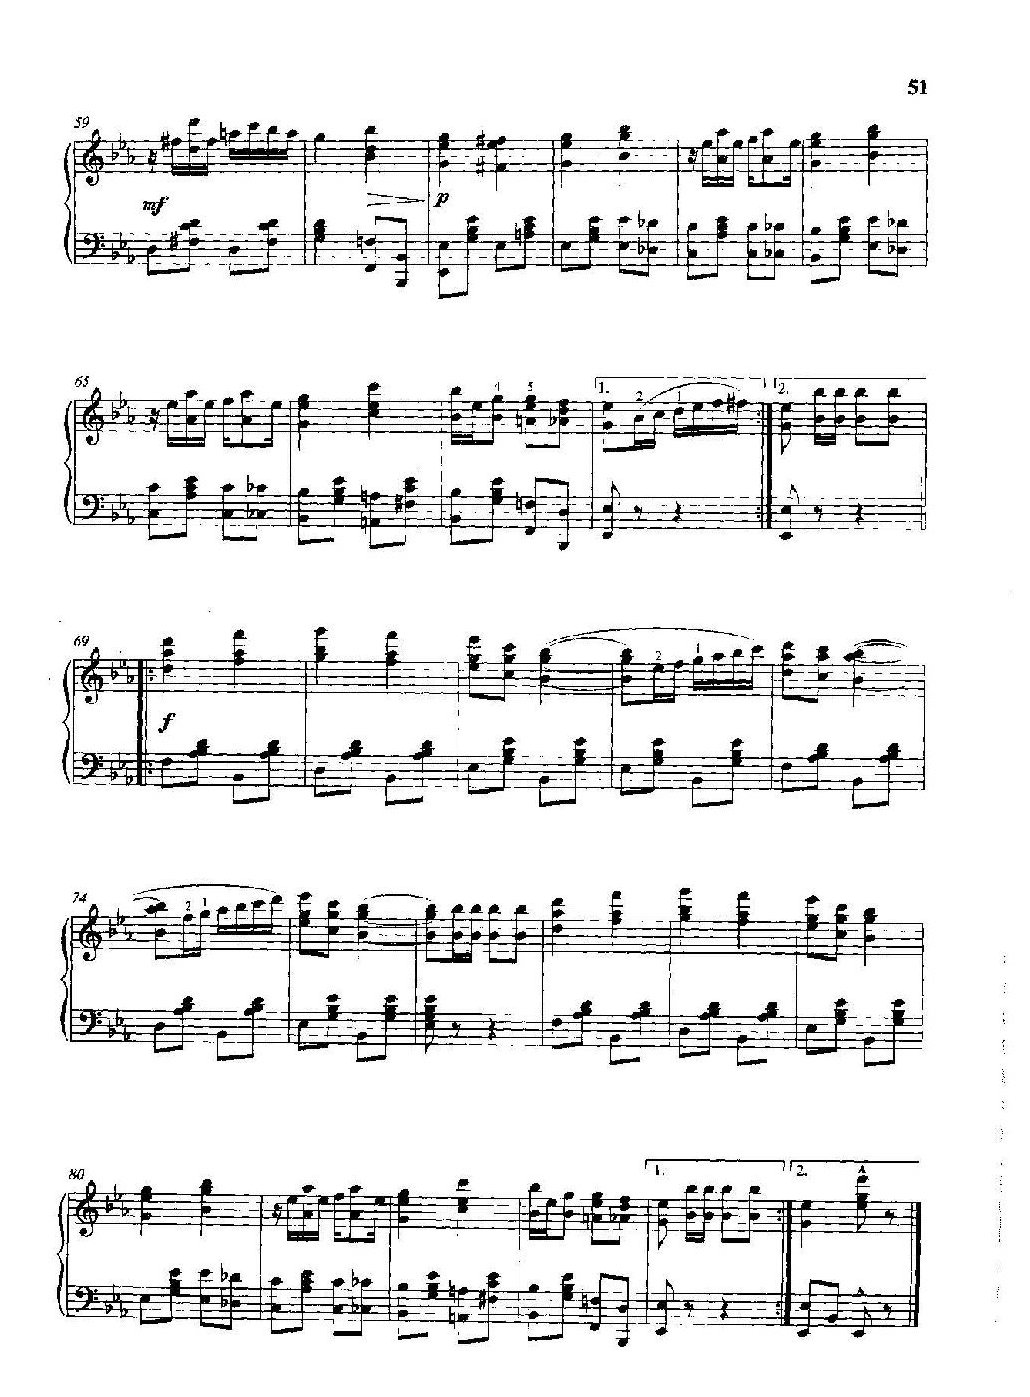 雷格泰姆钢琴乐谱《宠儿》雷格泰姆之王斯科特·乔普林